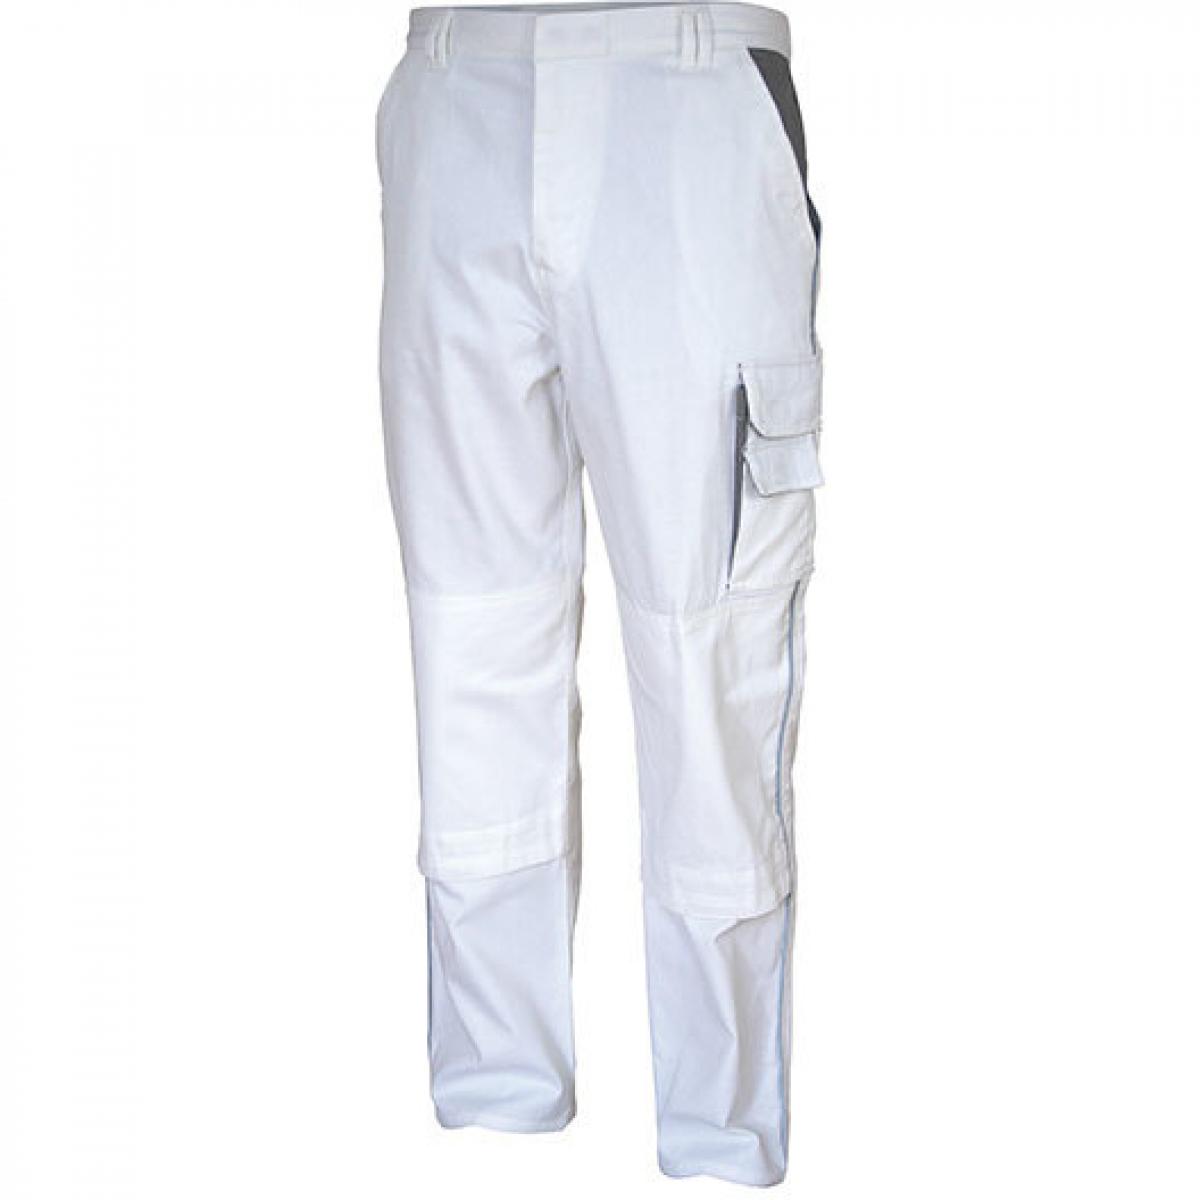 Hersteller: Carson Contrast Herstellernummer: CC709H Artikelbezeichnung: Herren Work Pants Arbeitshose / Bei 60 Grad waschbar Farbe: White/Grey